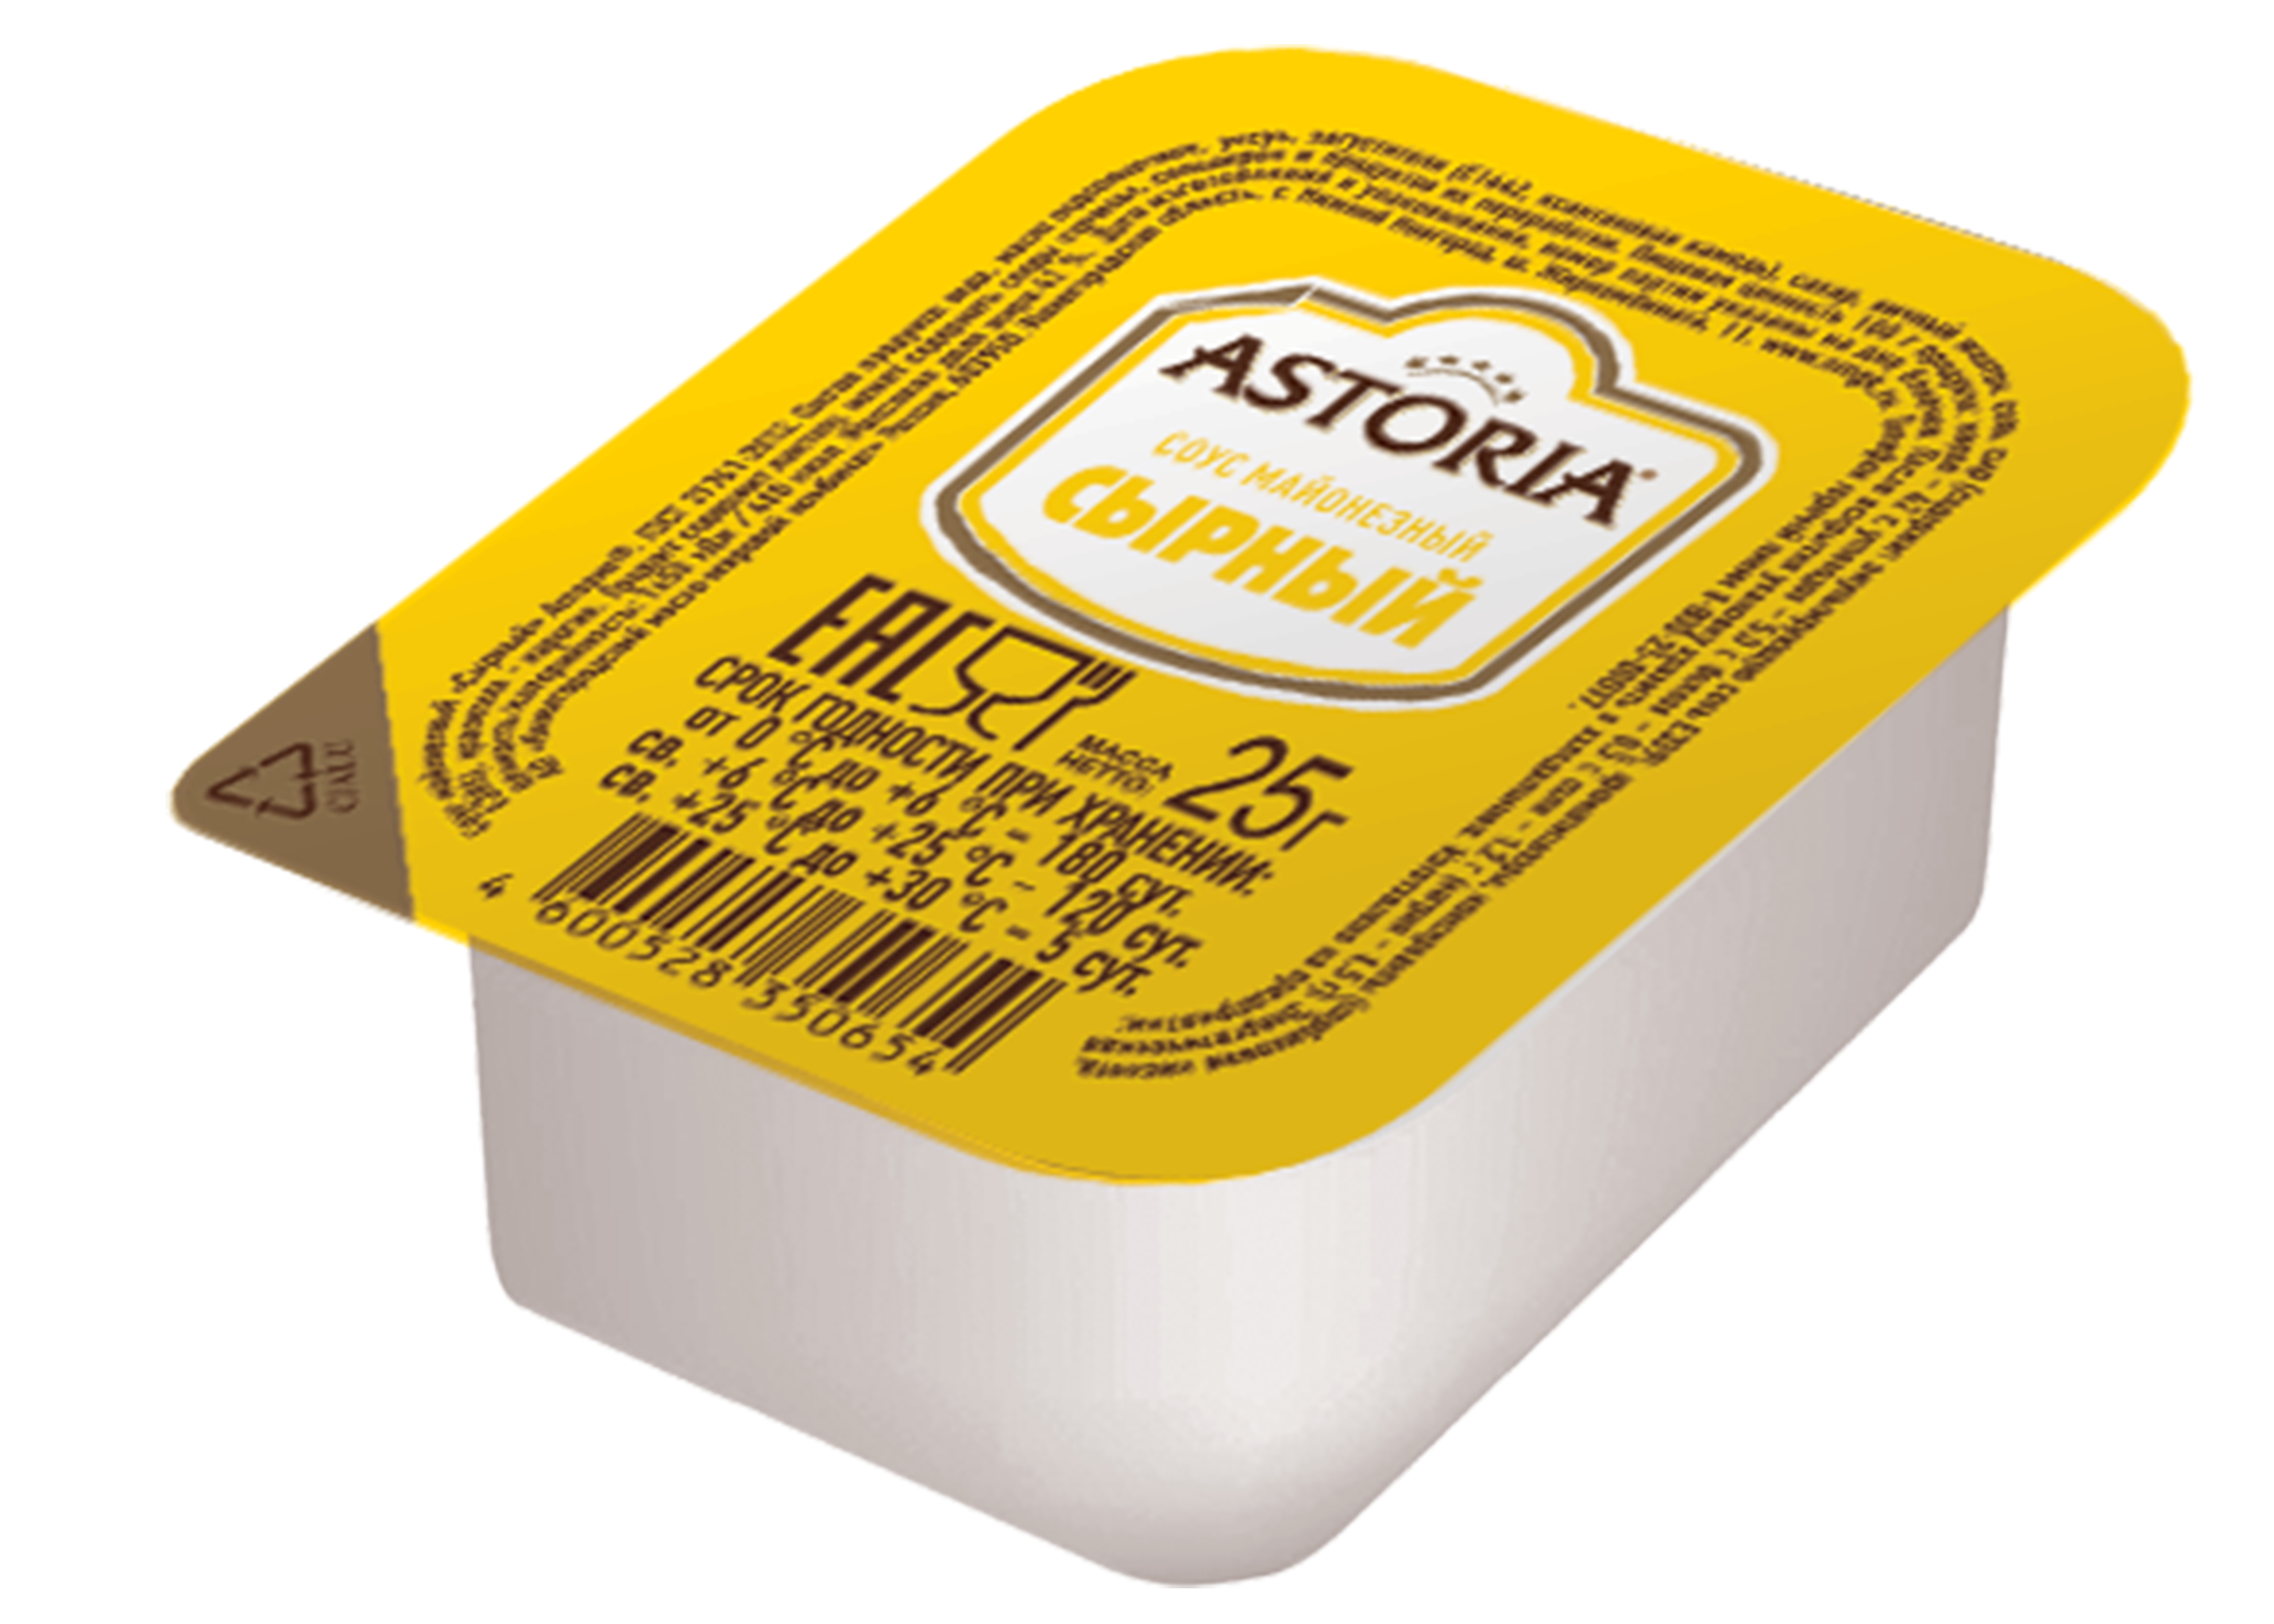 Соус Astoria сырный 42% 25 г